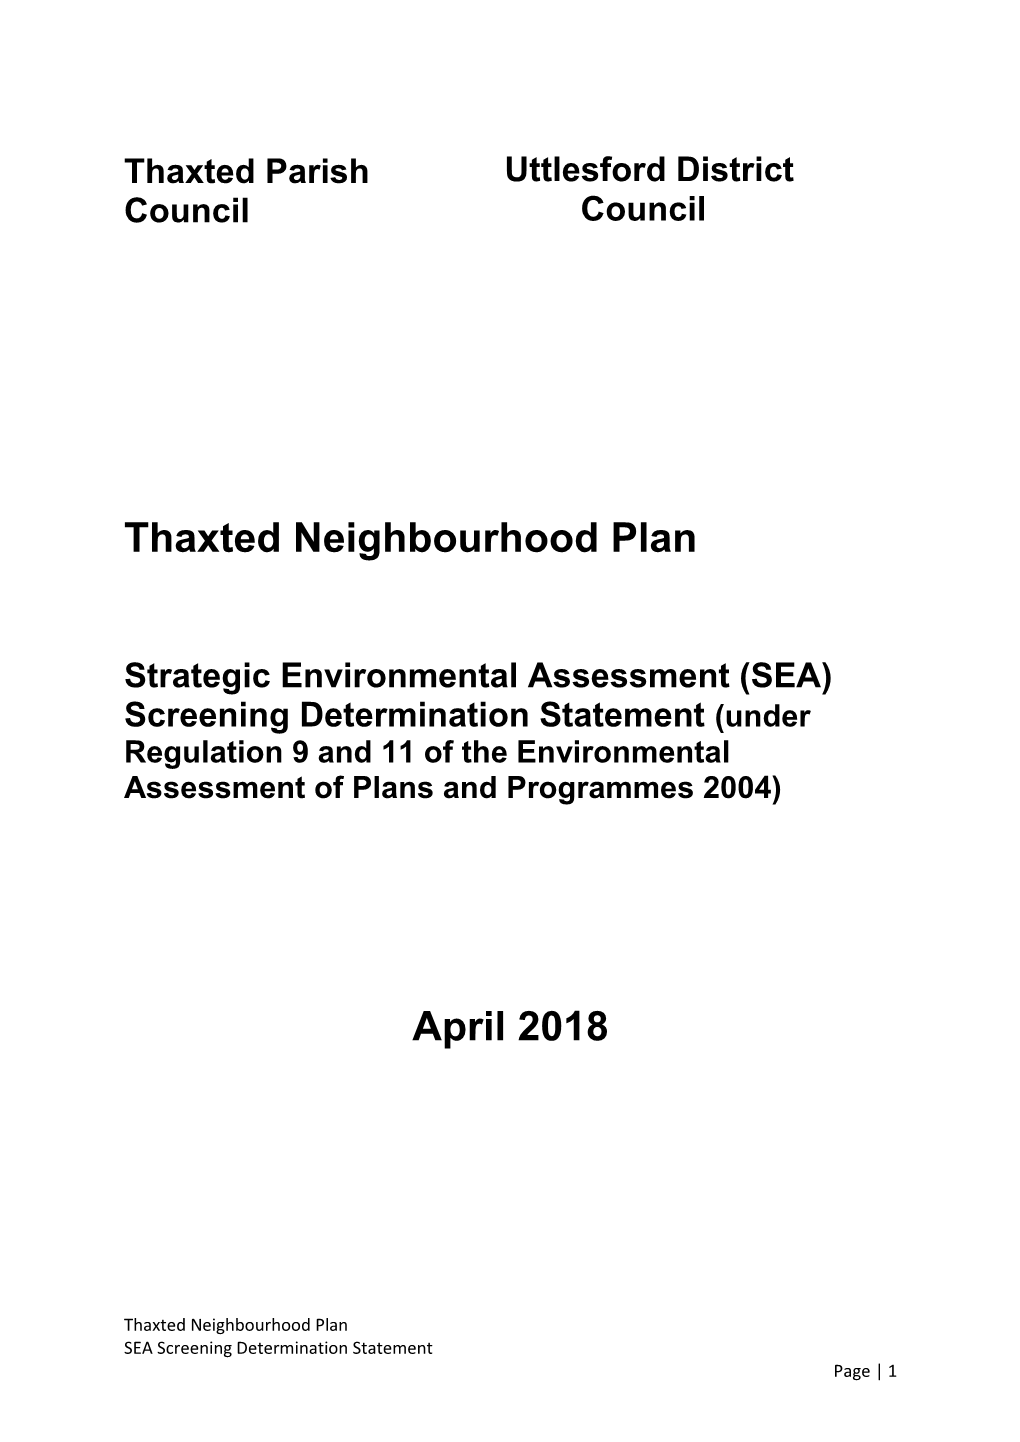 Thaxted Neighbourhood Plan Strategic Environmental Assessment